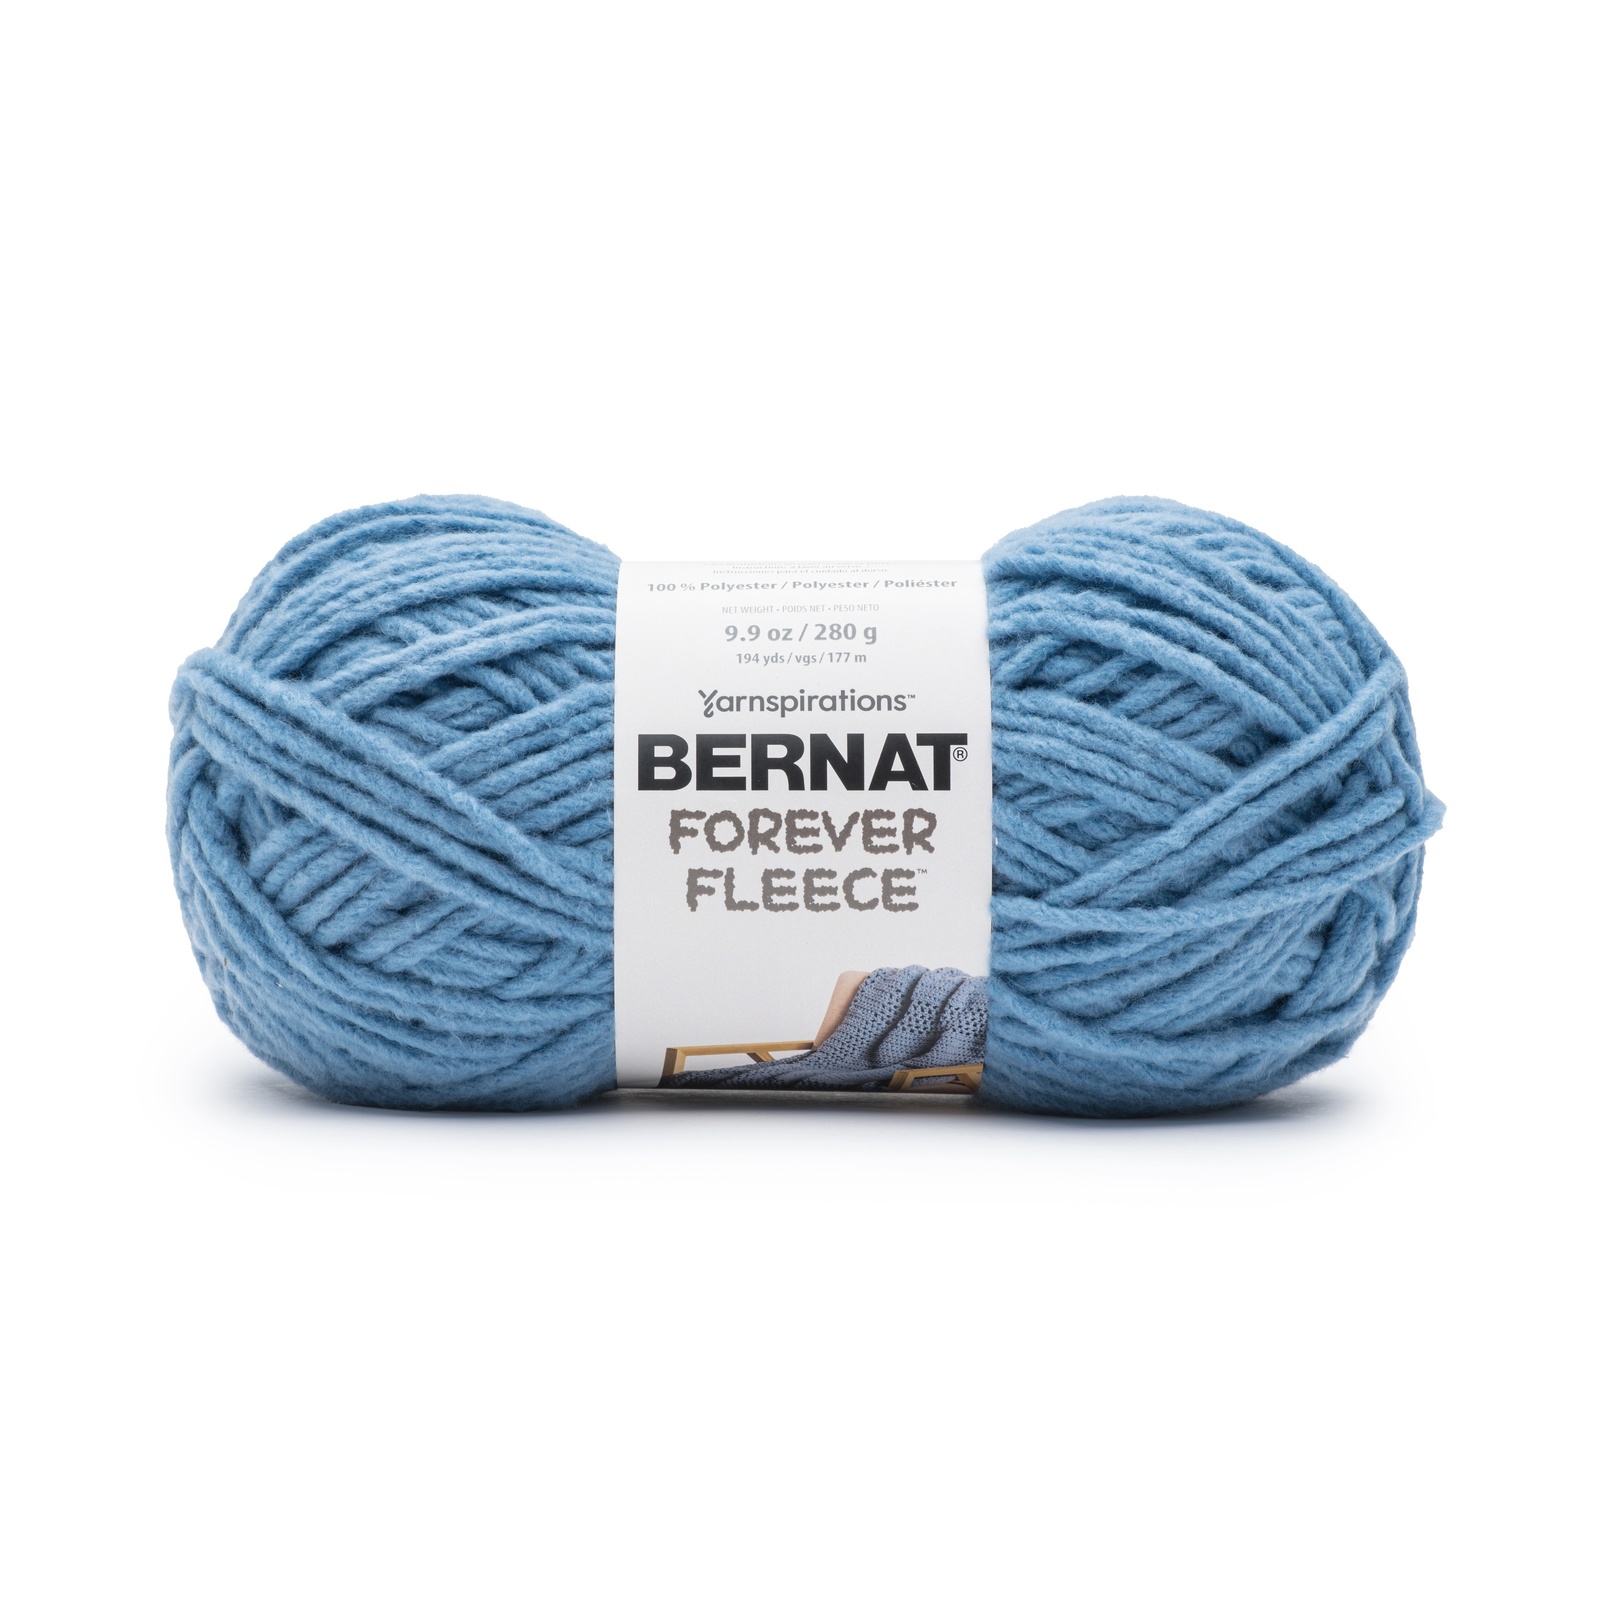 Bernat-super Value Solid Yarn. 1 Skein True Grey 7oz -  Denmark